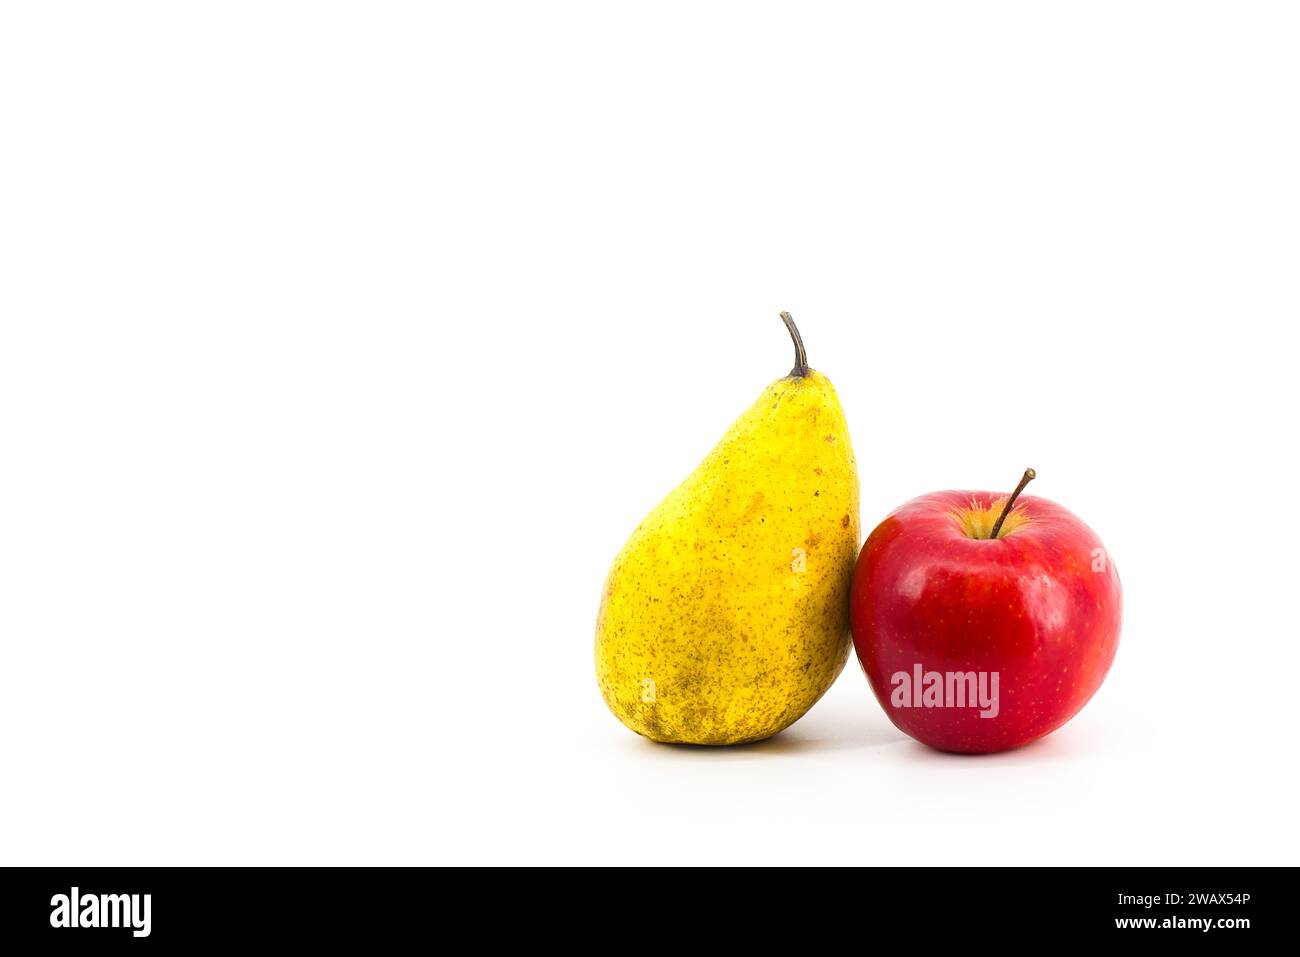 Un'immagine vibrante che mostra una pera gialla e una mela rossa su uno sfondo bianco incontaminato. I colori contrastanti creano una composizione visivamente accattivante Foto Stock